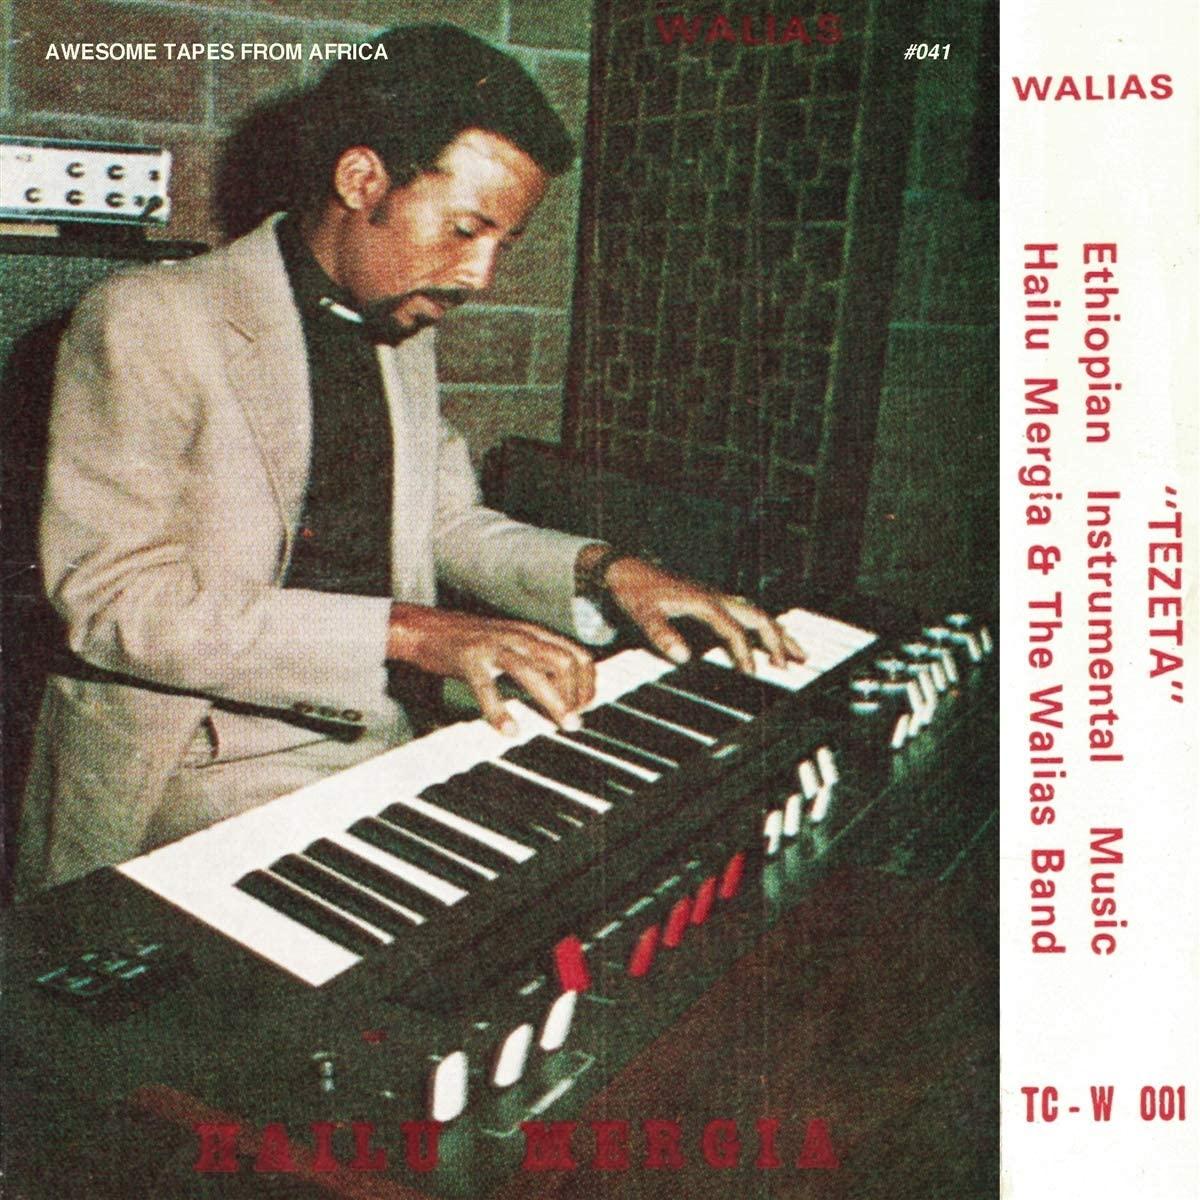 Hailu Mergia & The Walias Band - Tezeta (1975) LP